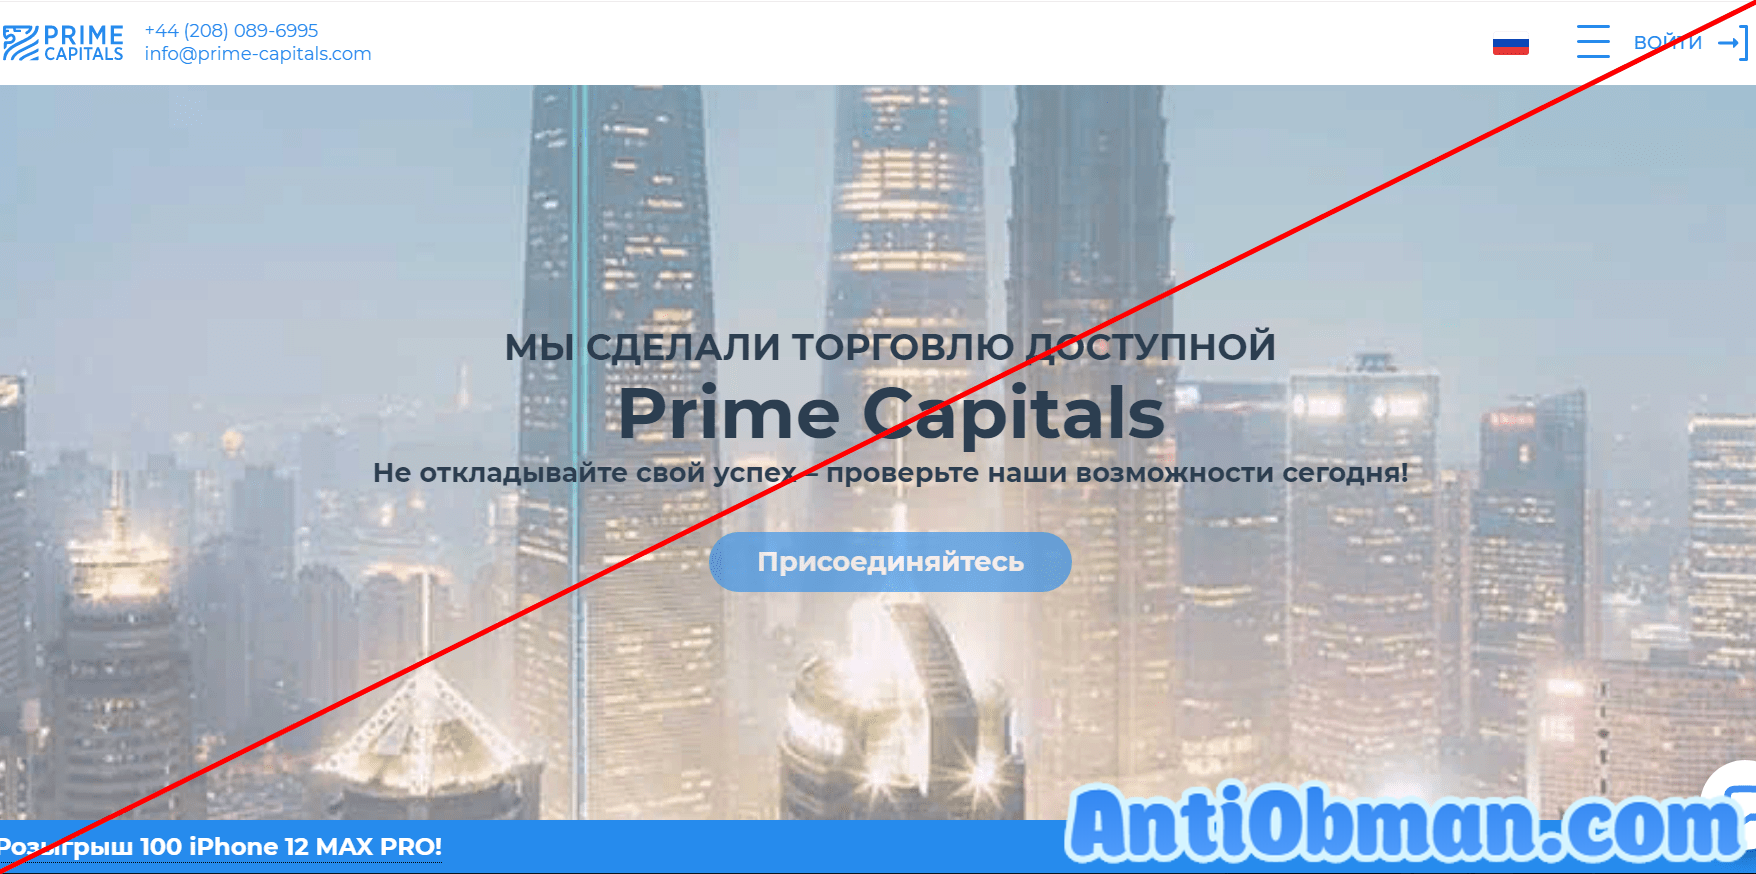 Prime Capitals (prime-capitals.com) - отзывы